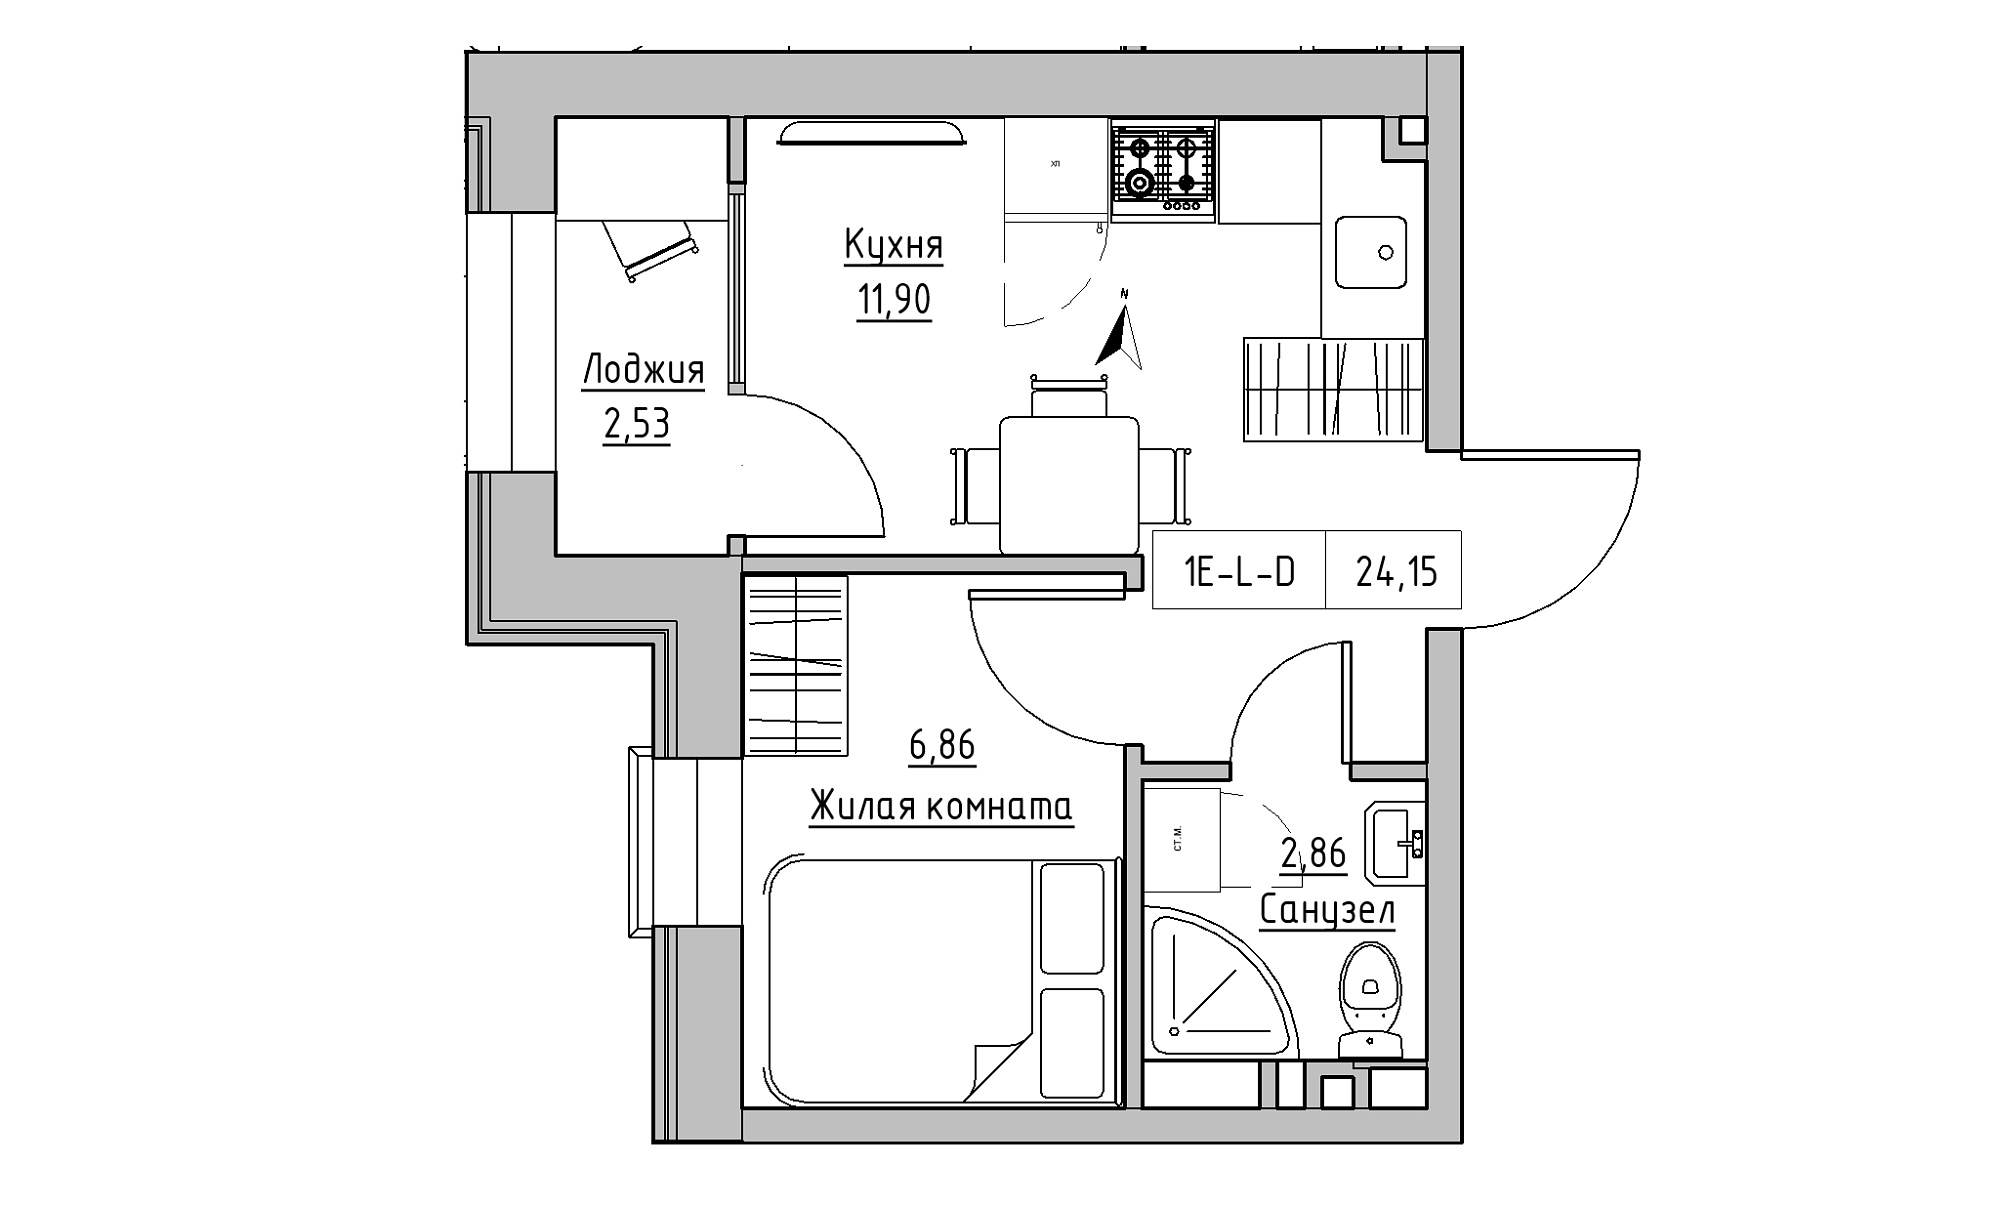 Планування 1-к квартира площею 24.15м2, KS-023-05/0001.